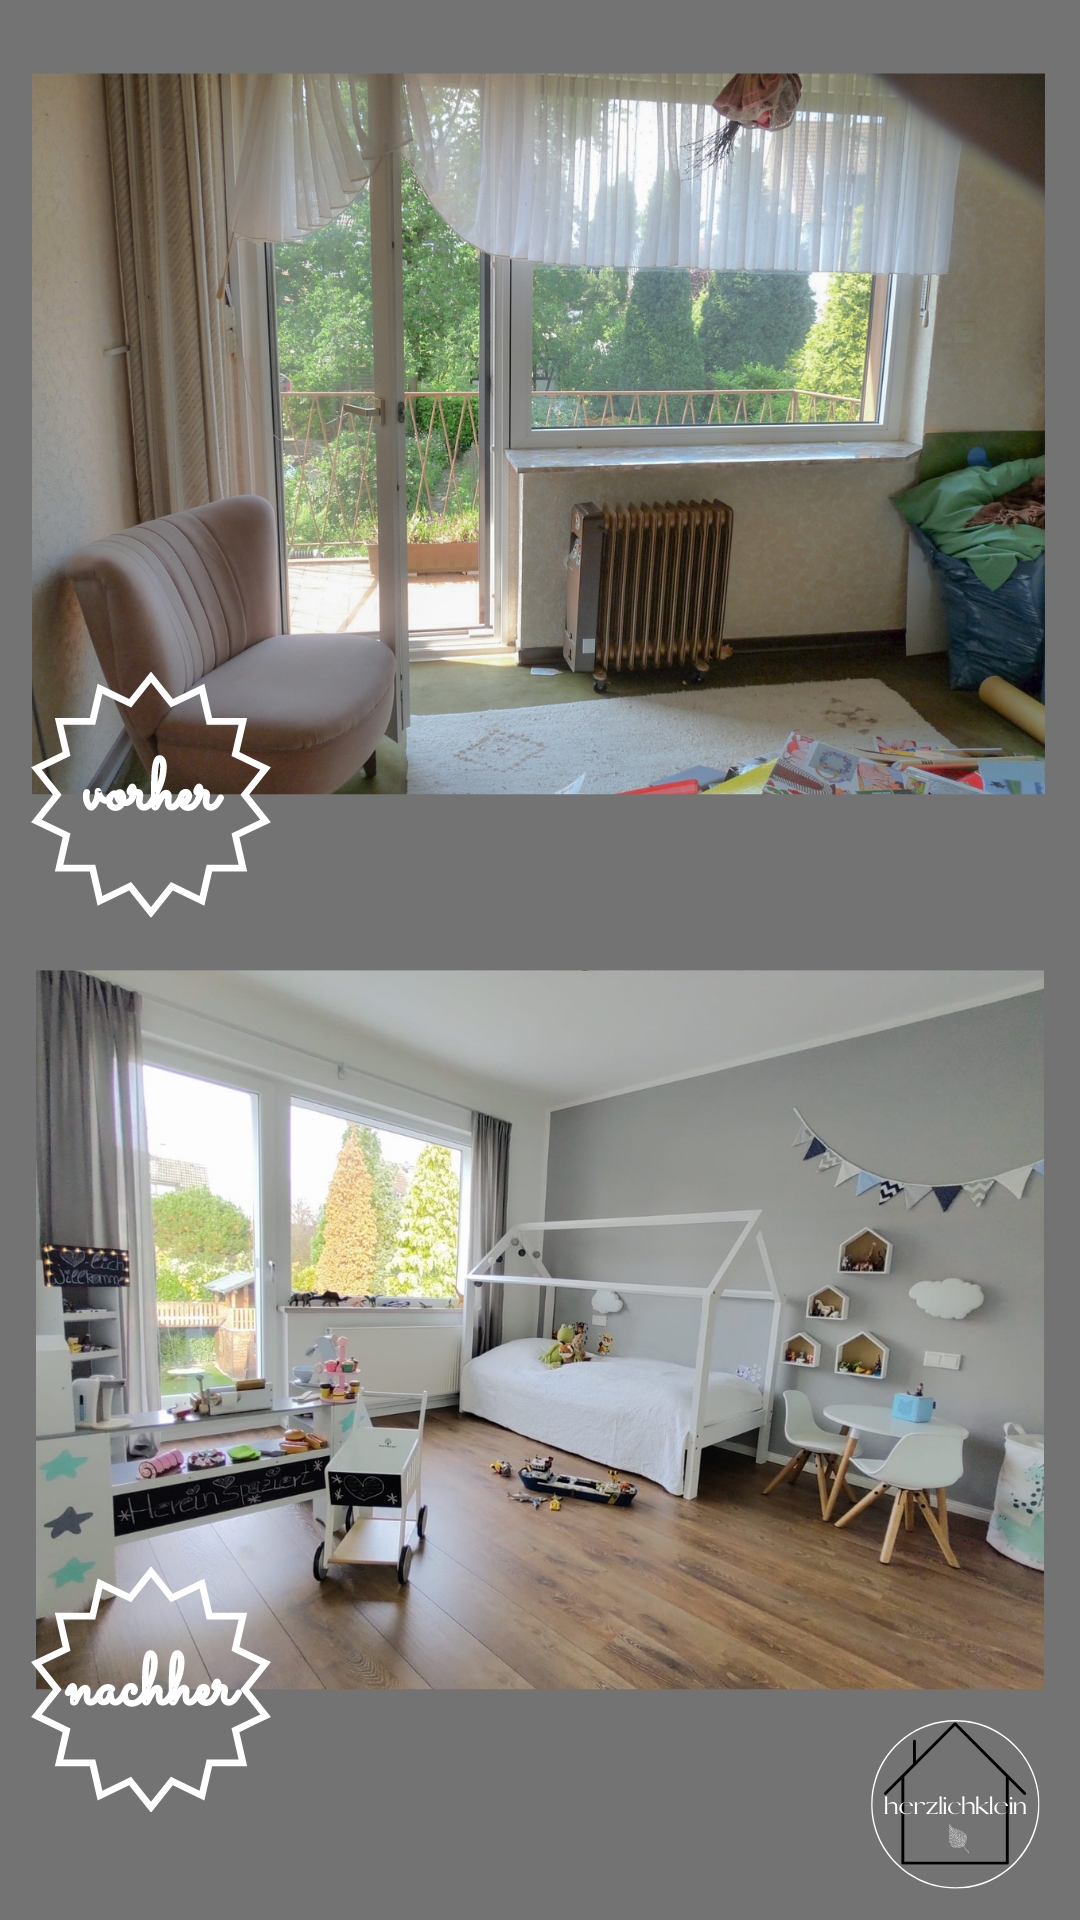 Reihenhausverwandlung - how to!
Die Entstehung unseres Traumhauses 🤍 
Part 1
#kinderzimmer #reihenhaus #vorhernachher